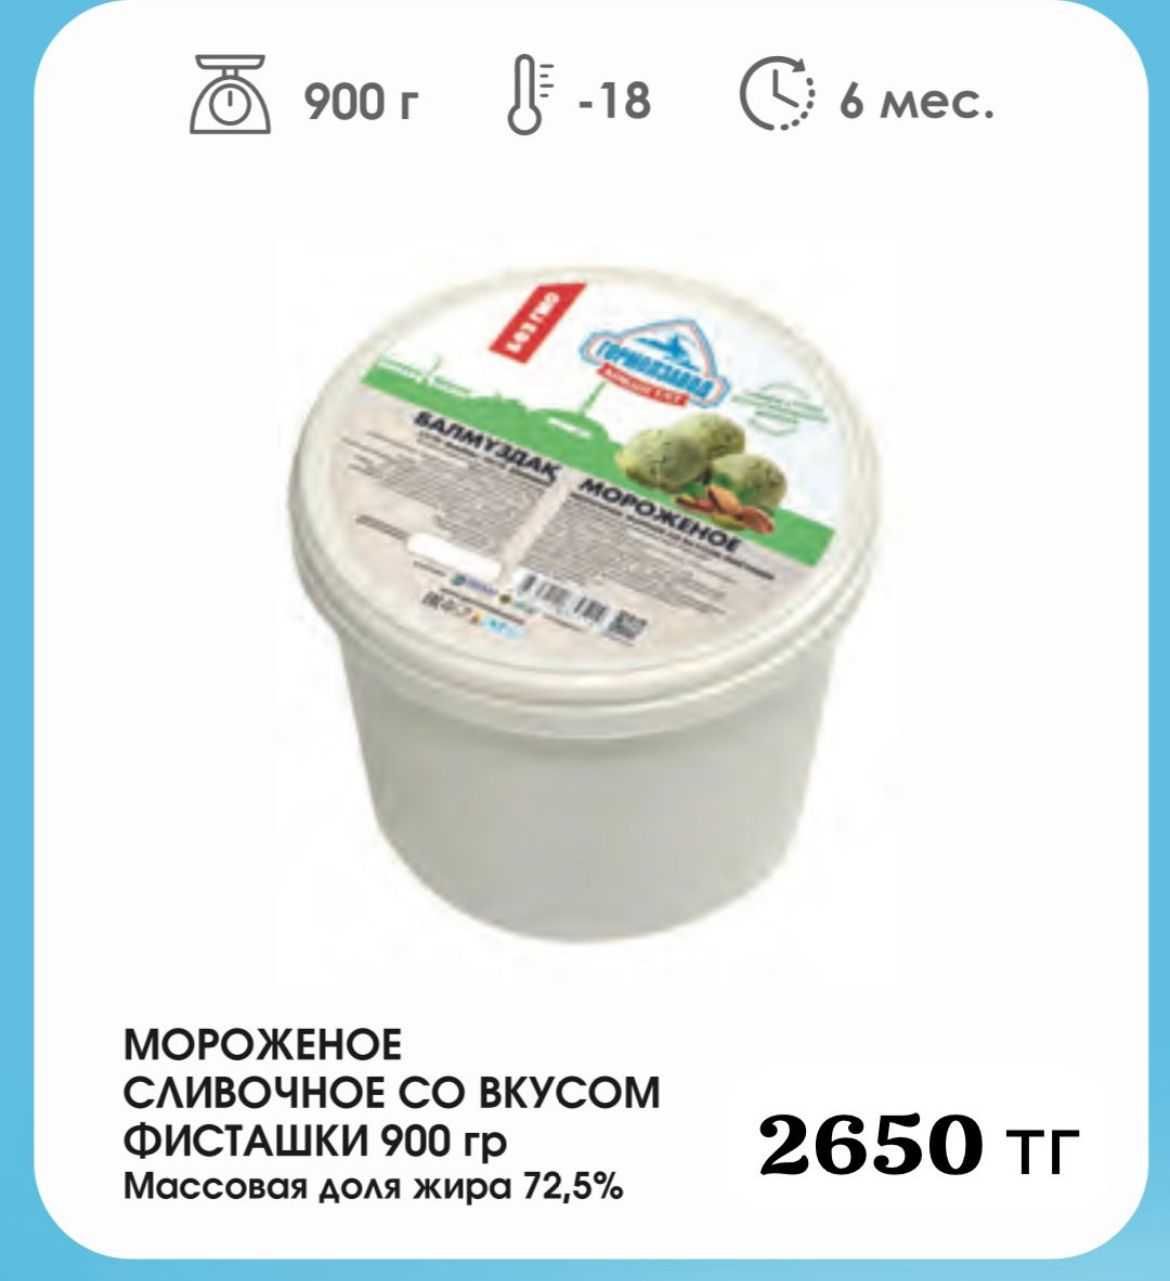 Мороженое Монолит 5 кг ГОРМОЛЗАВОД КОКШЕТАУ